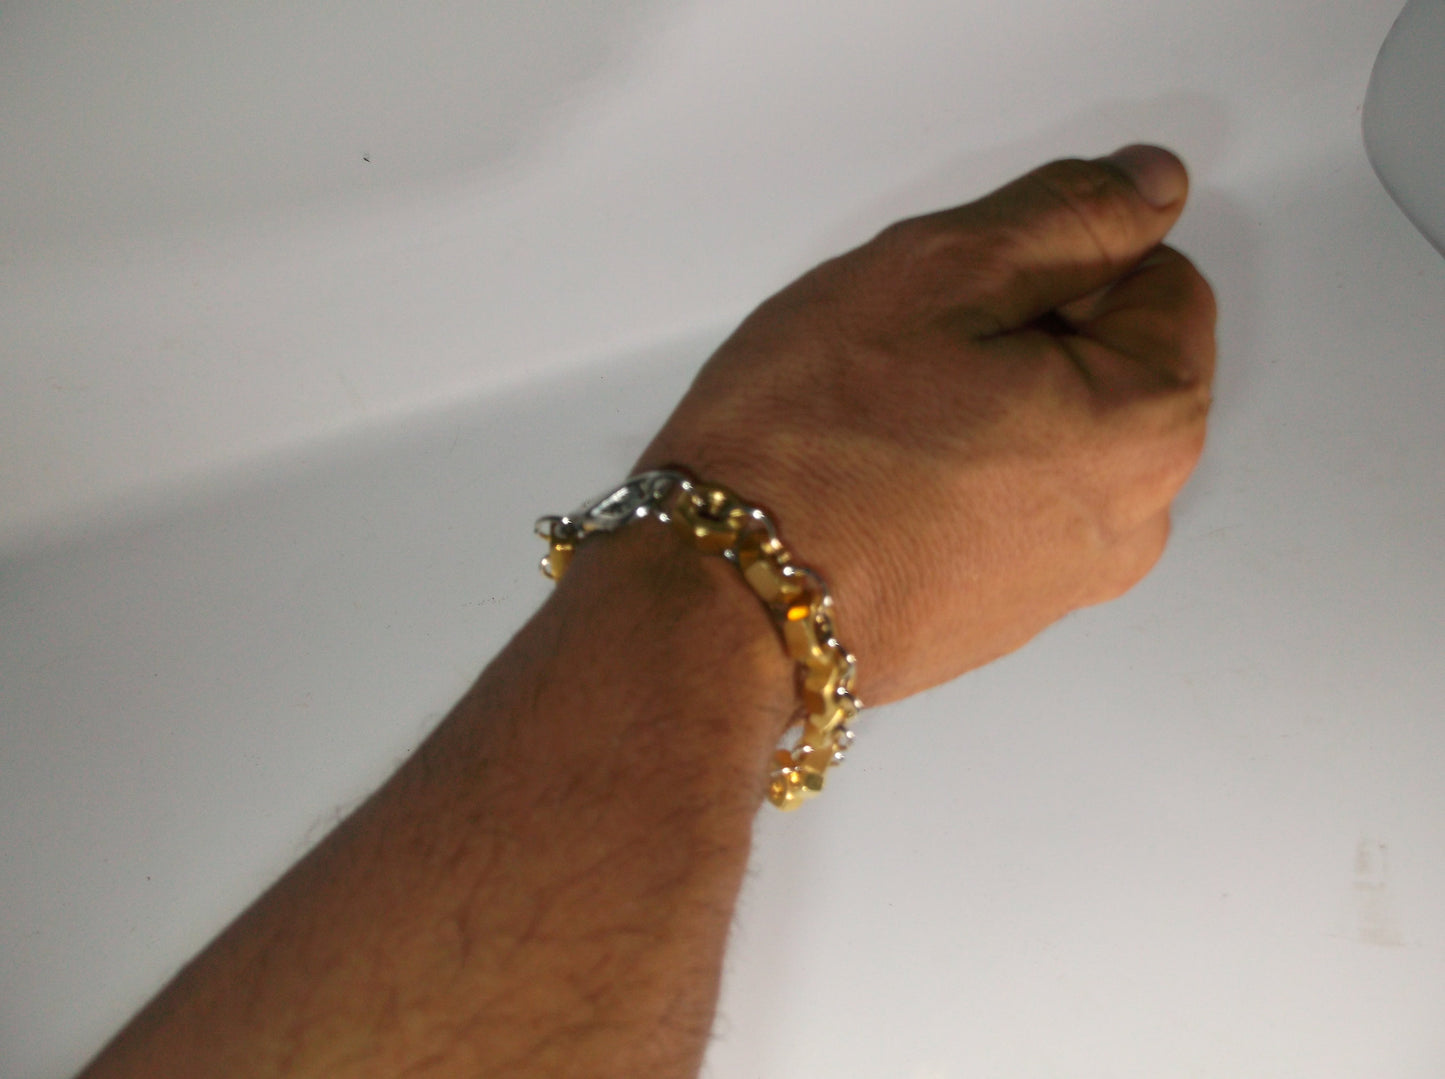 Brass Bracelet, Nut Bracelet, Crazy Nut bracelet, Up cycled handmade